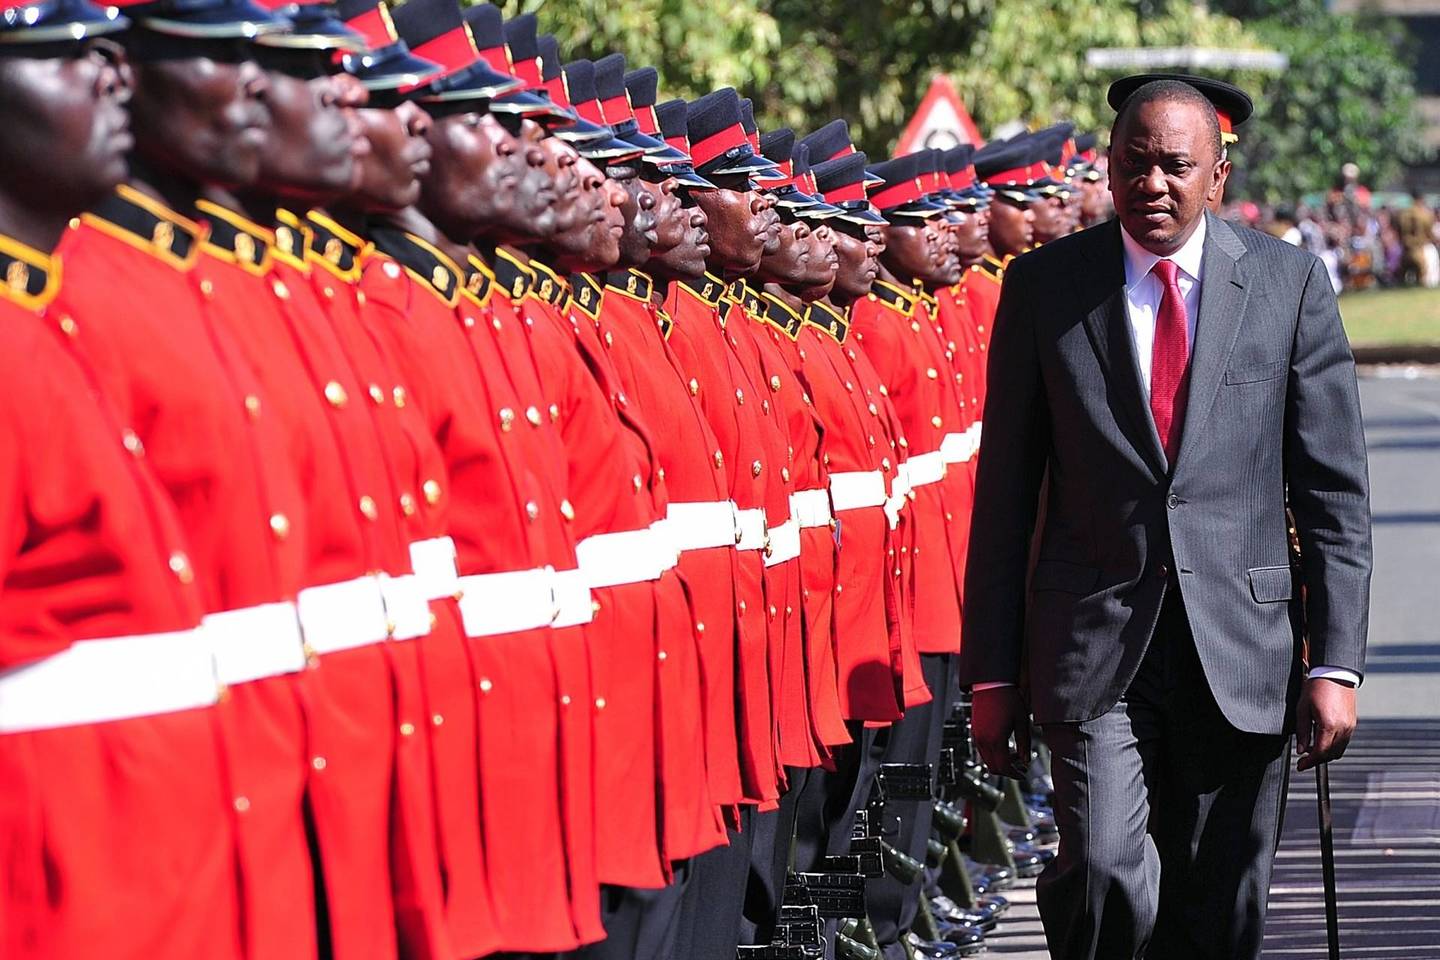 Kenijos lyderis Uhuru Kenyatta trečiadienį tapo pirmuoju prezidento pareigas einančiu politiku, pasirodžiusiu Tarptautiniame baudžiamajame teisme (TBT), kuris jį kaltina nusikaltimais žmoniškumui.<br>AFP/Scanpix nuotr.